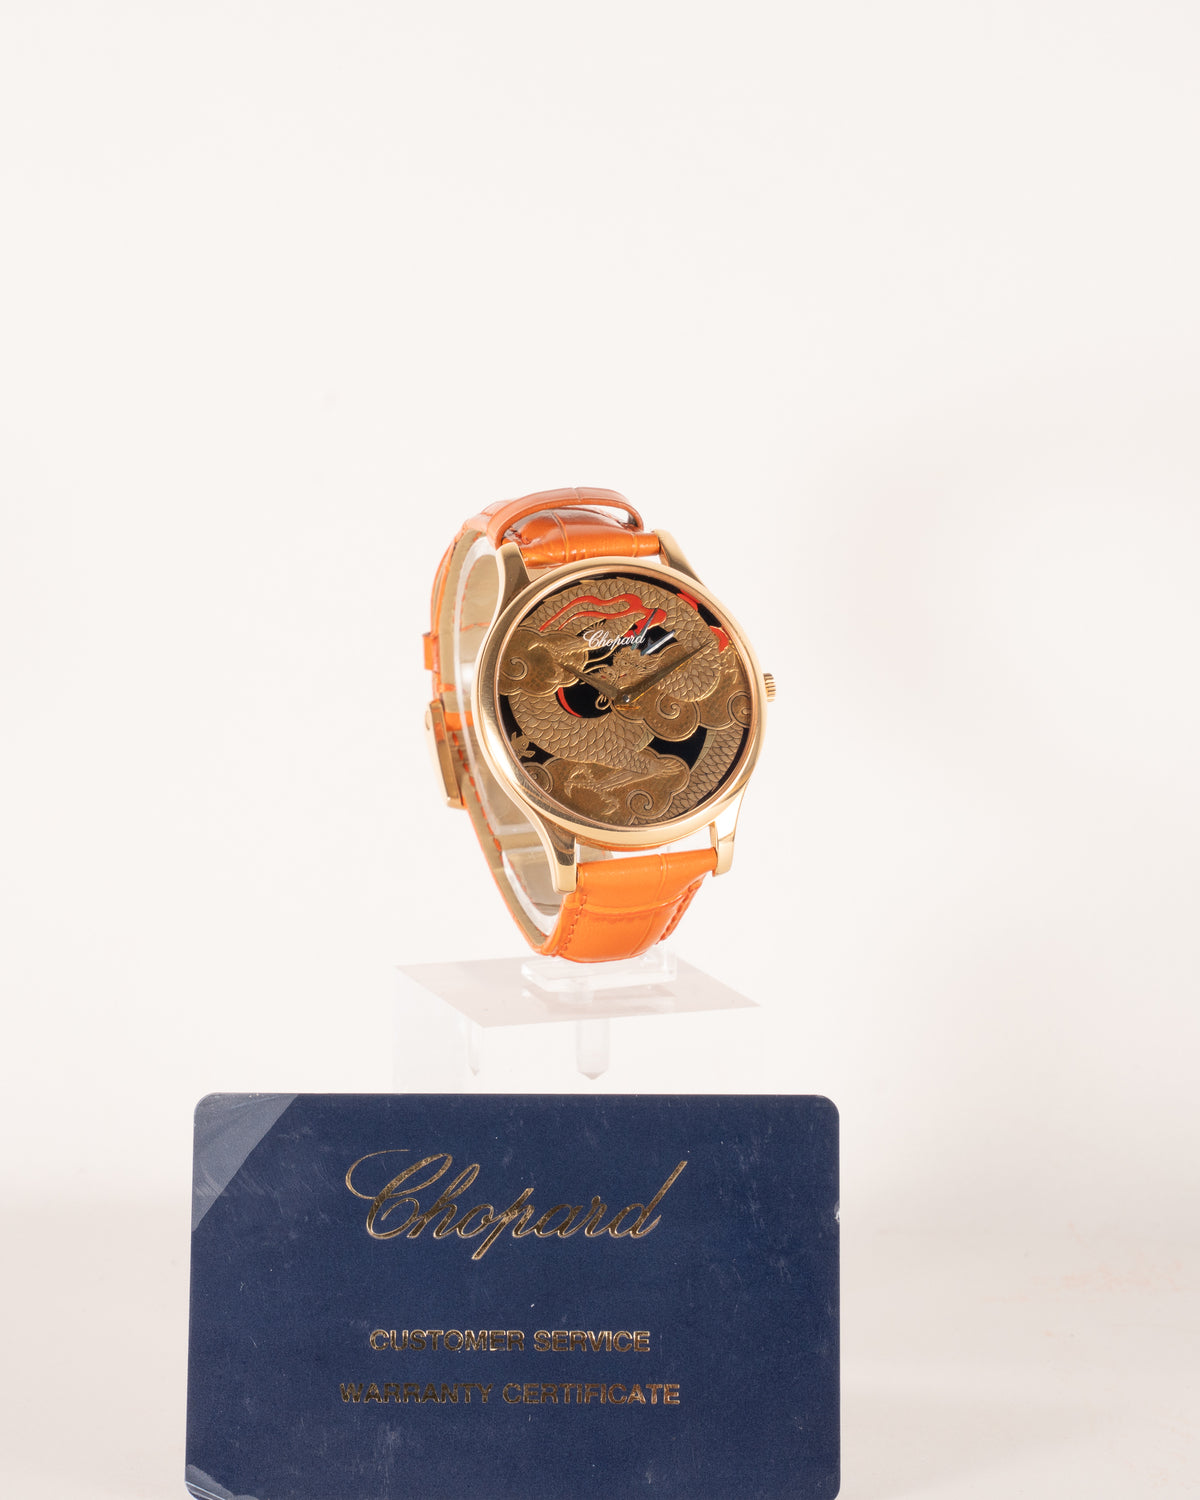 Chopard 161902-5044 Dragon by Kiichiro Masumura, Hand Finished Lacquer dial 2015